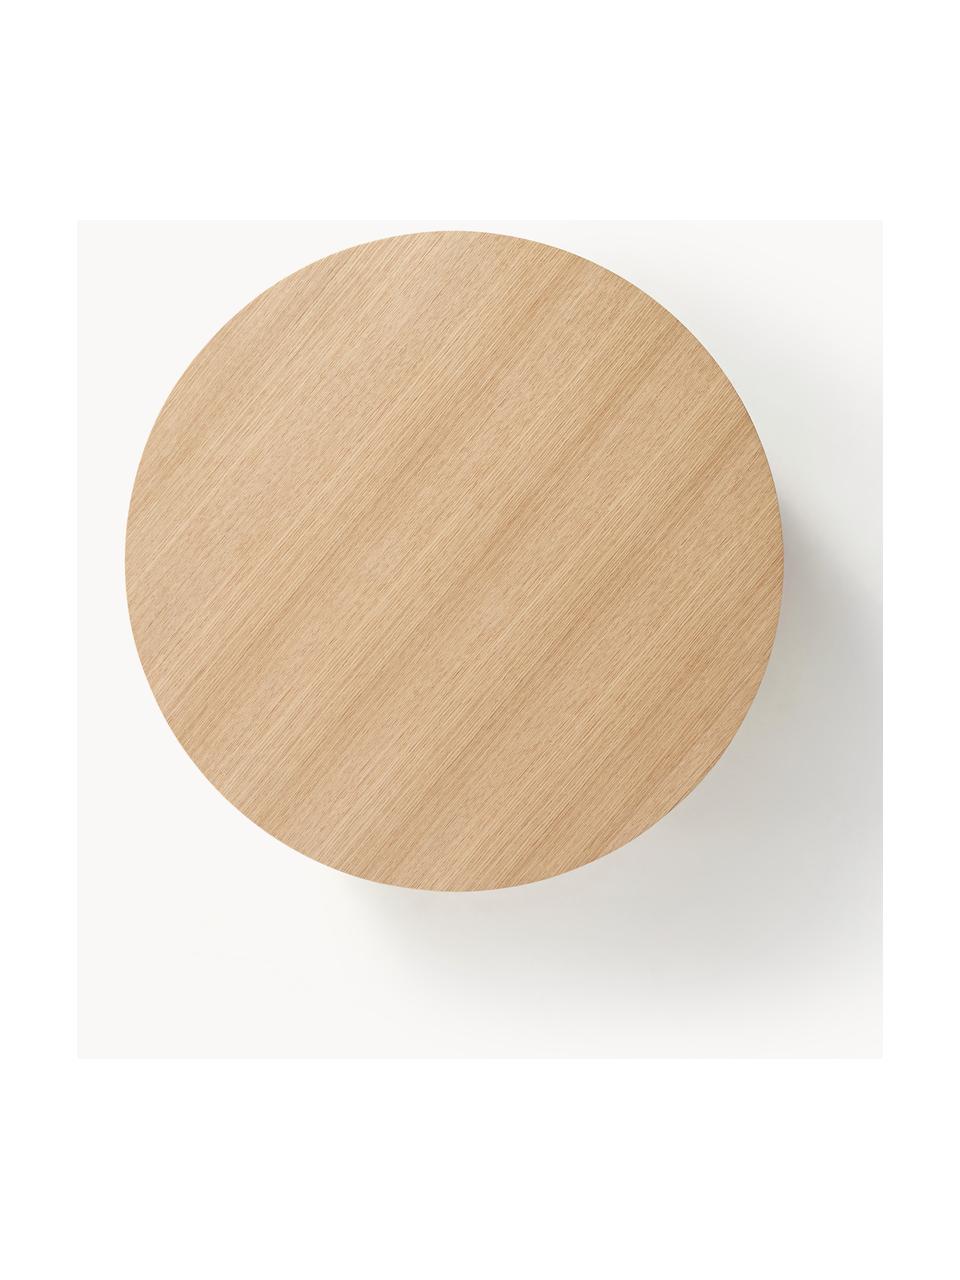 Okrągły stolik kawowy z drewna Dan, Płyta pilśniowa średniej gęstości (MDF) z fornirem z drewna dębowego, Rattan, drewno naturalne, Ø 80 x W 30 cm